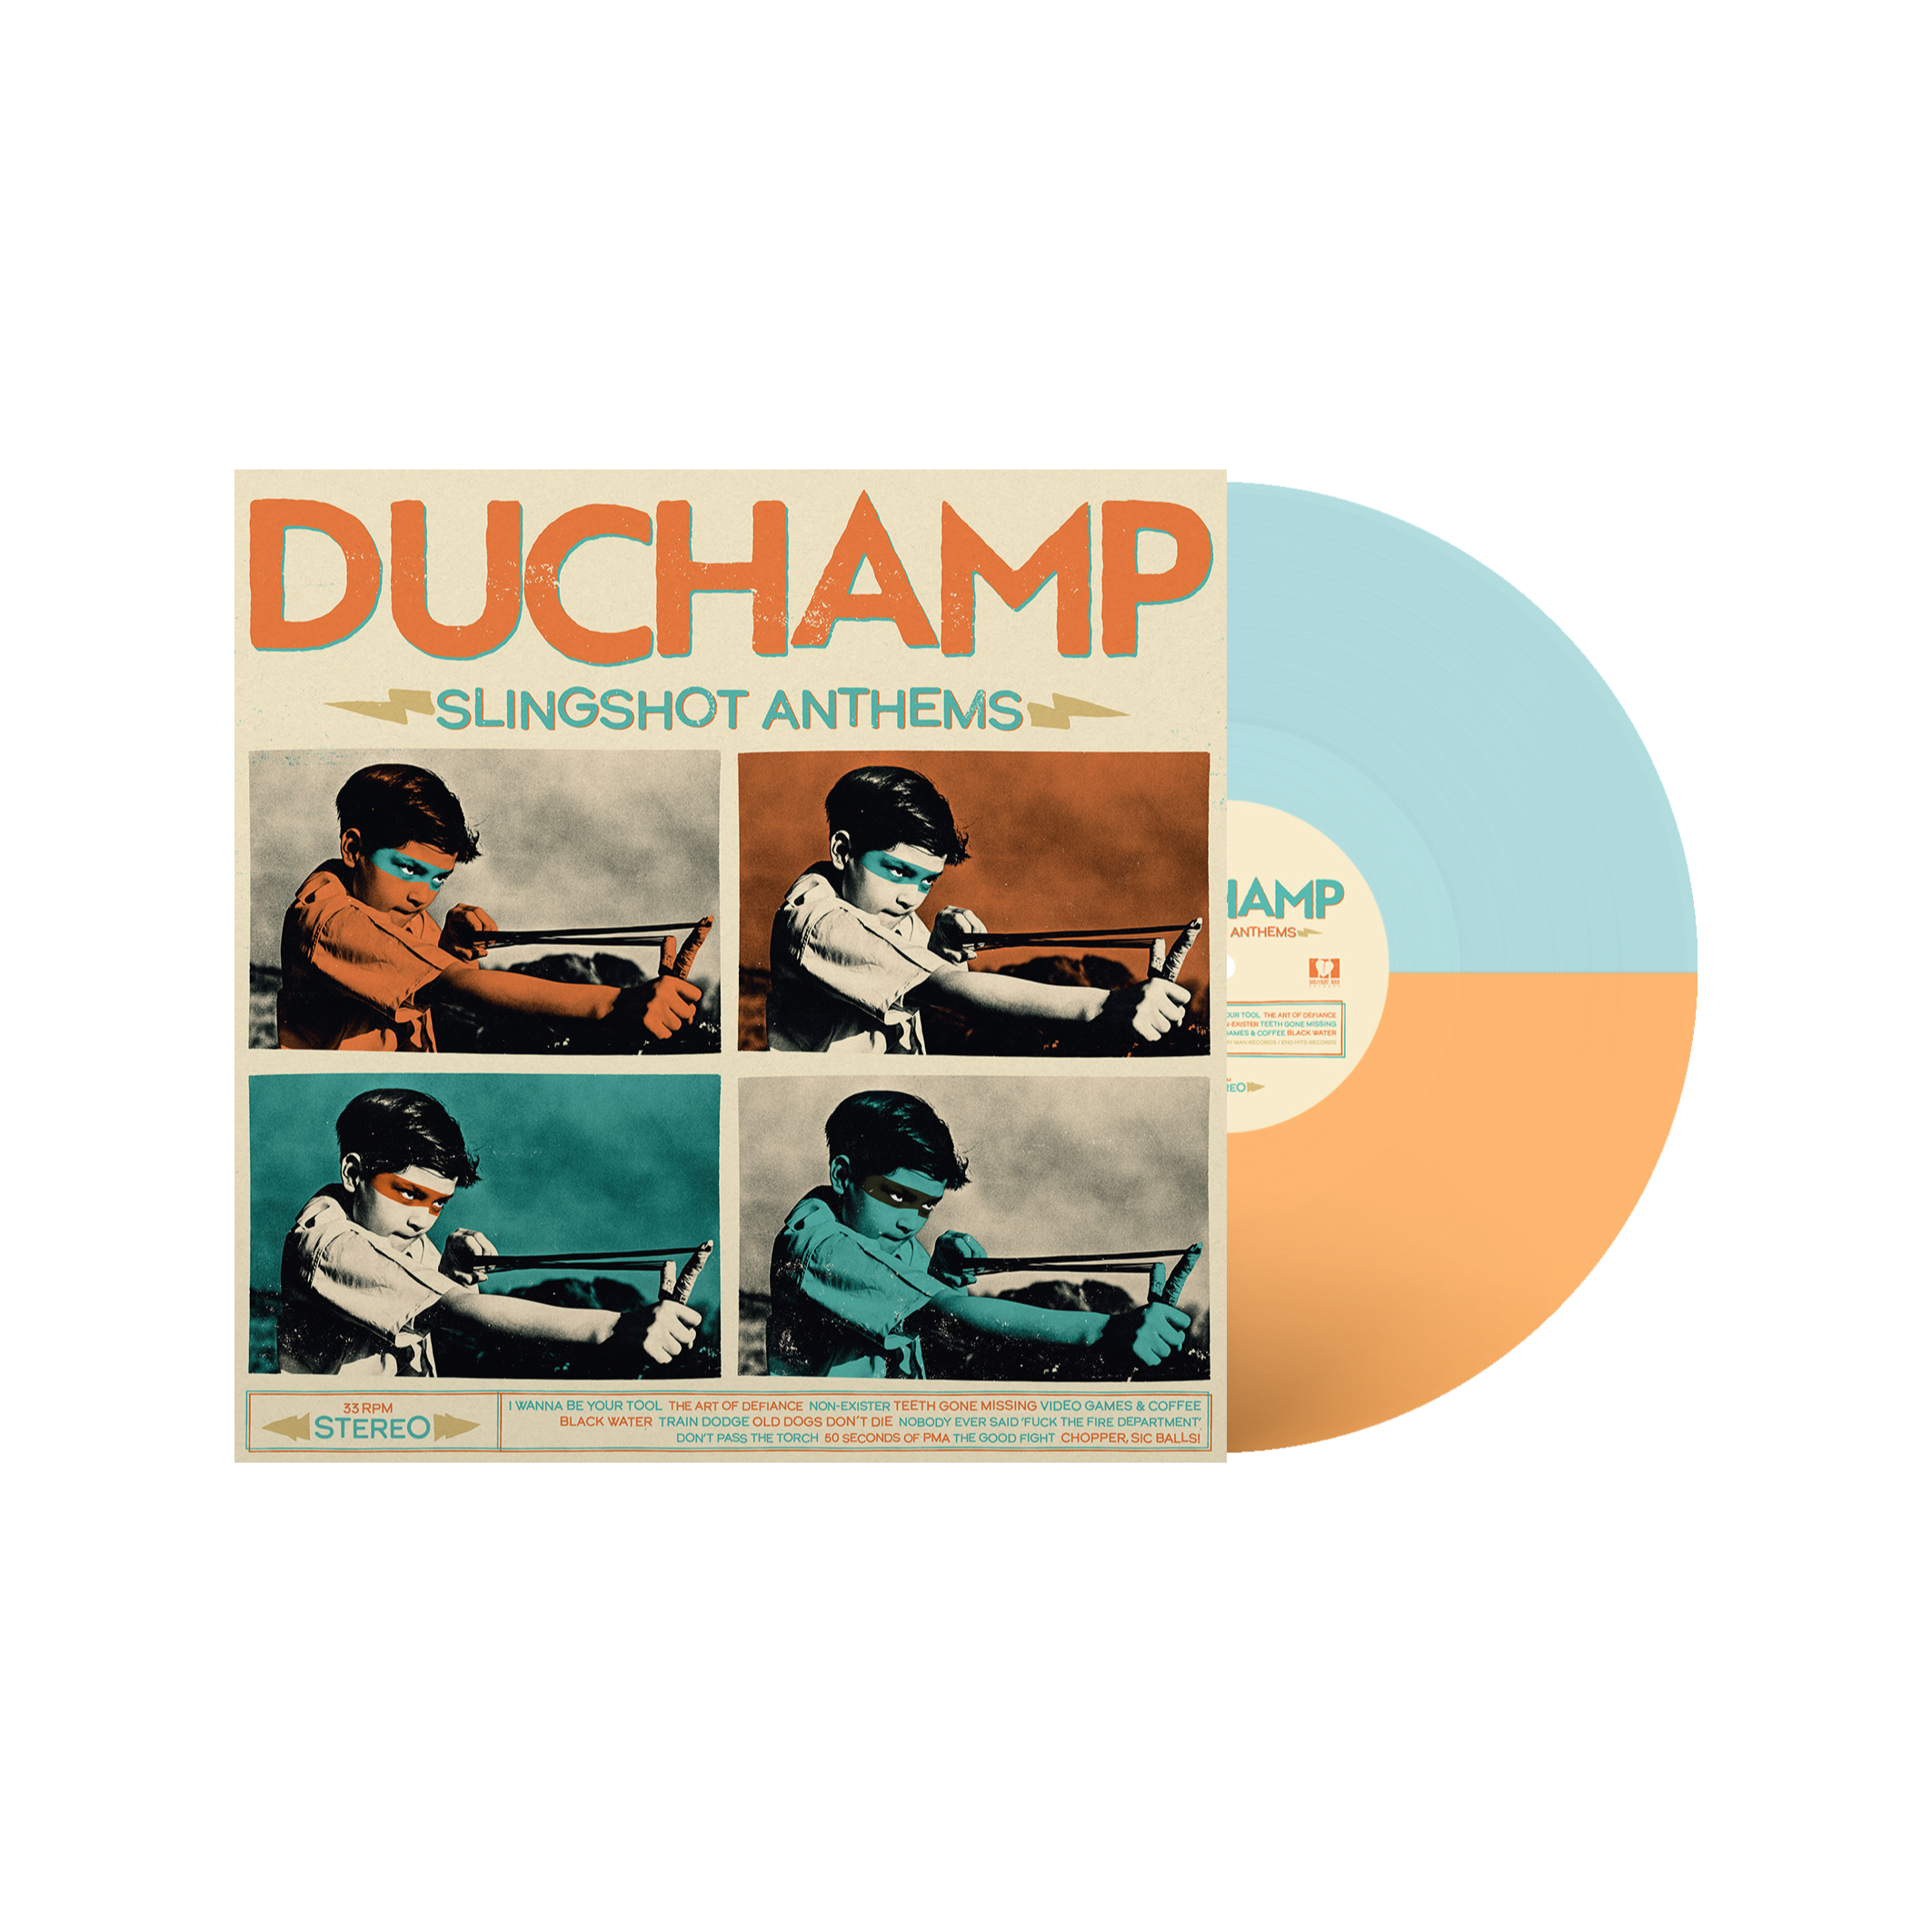 DUCHAMP-Slingshot-Anthems-LP-Half-Half-Electric-Blue-Transparent-Orange.png